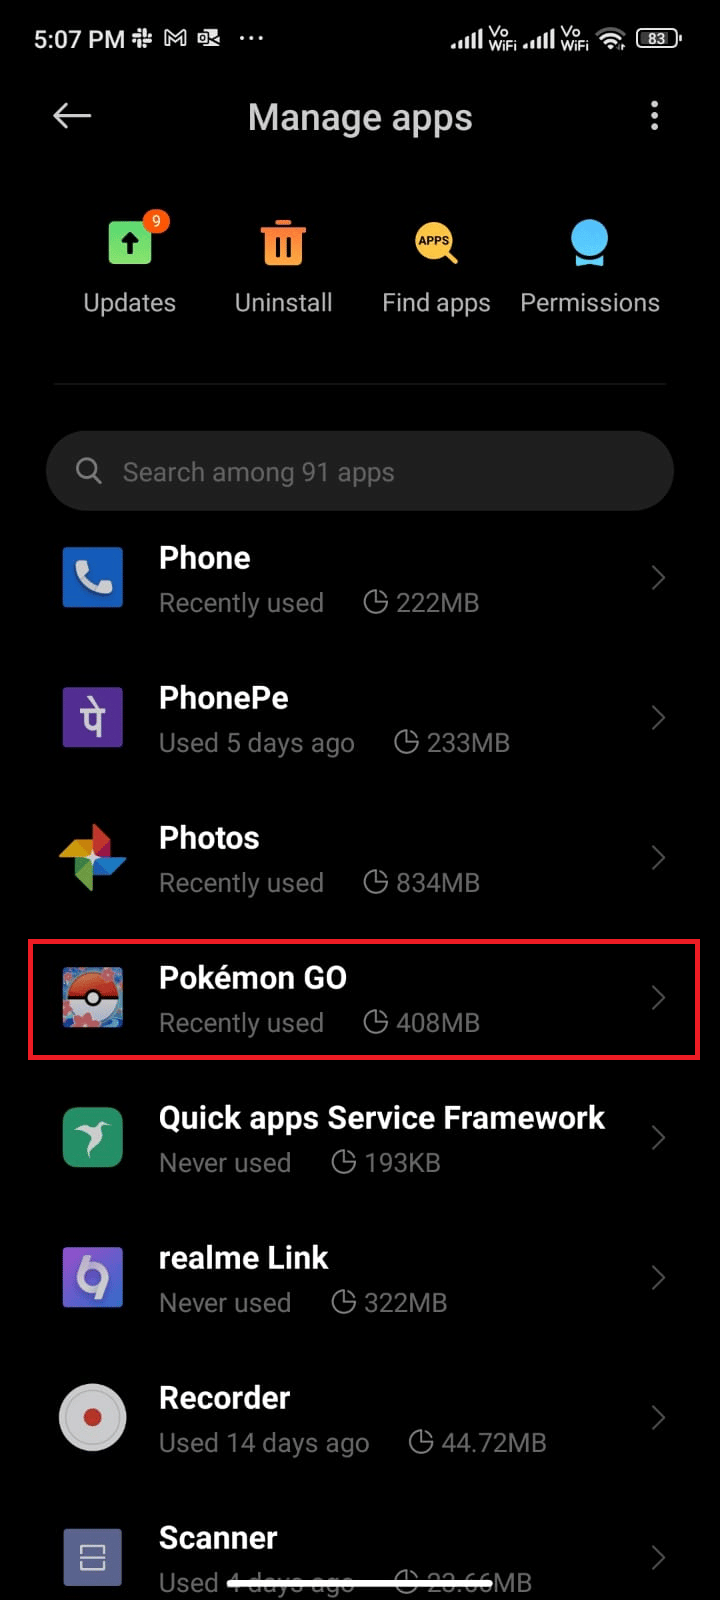 Now, scroll down and tap Pokémon GO. fix Pokémon Go adventure sync not working